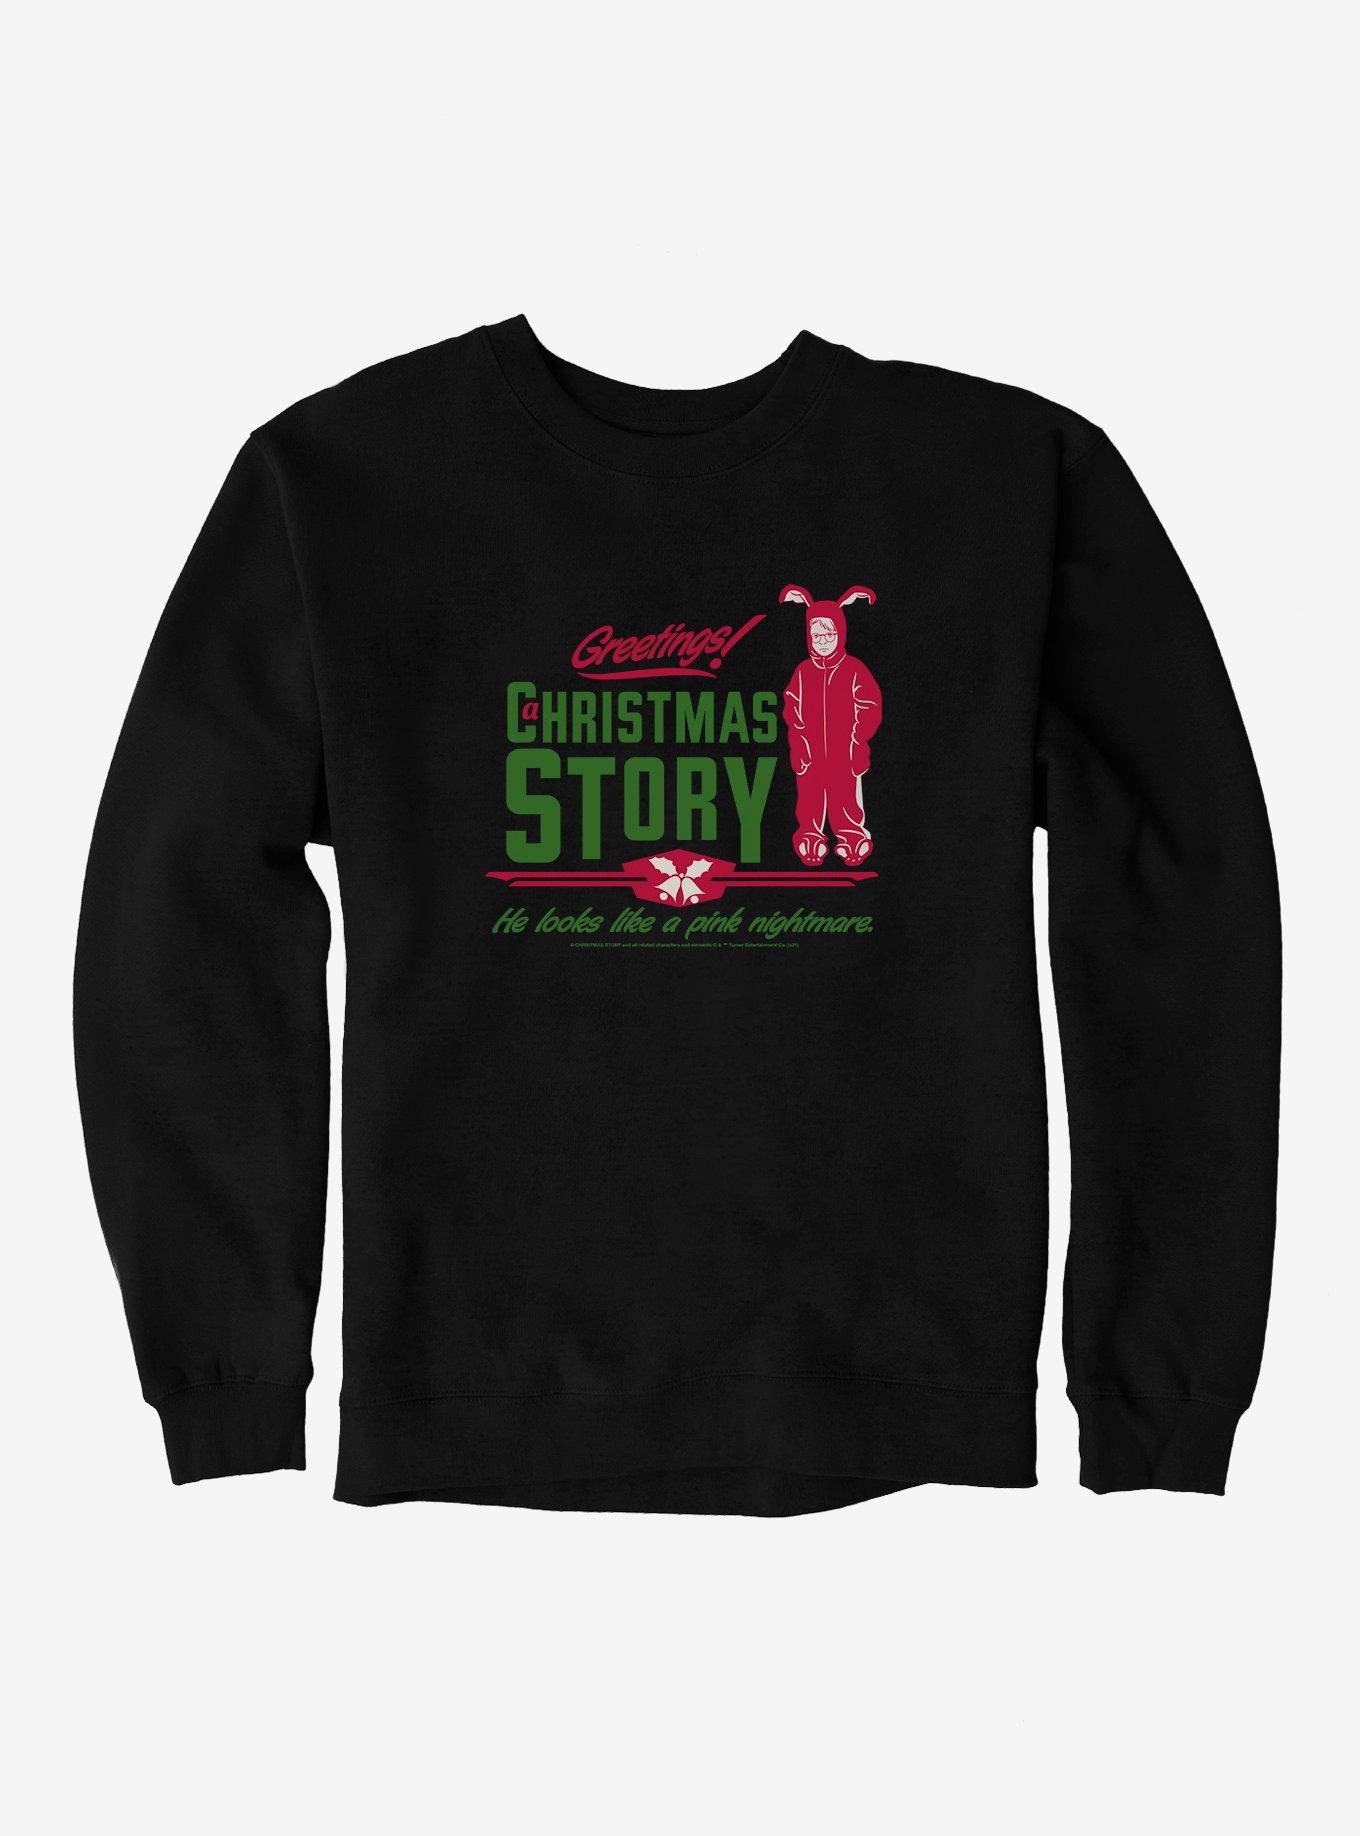 A Christmas Story  Pink Nightmare  Sweatshirt, BLACK, hi-res